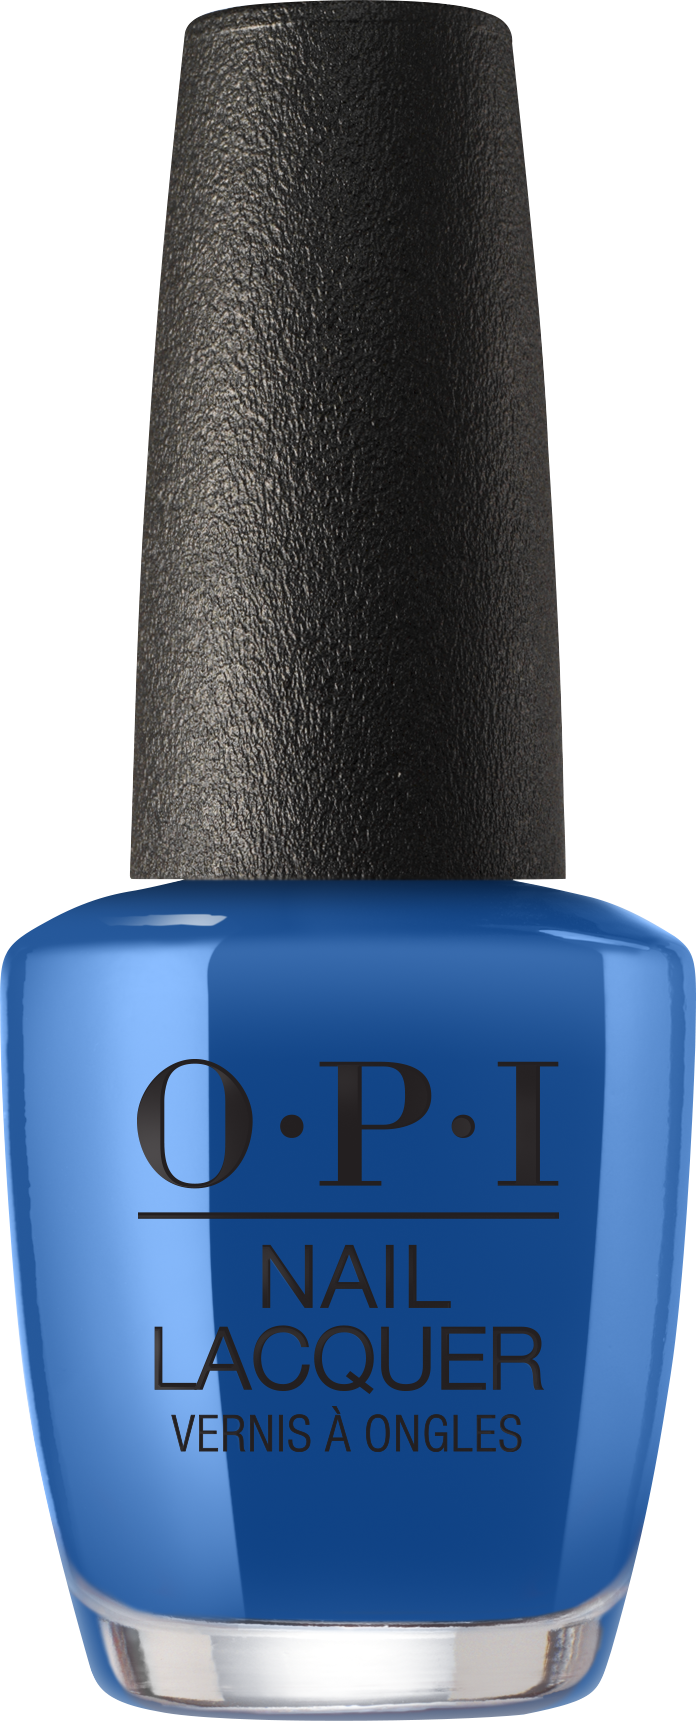 OPI Nail Polish - Mi casa es blue casa (NL M92)